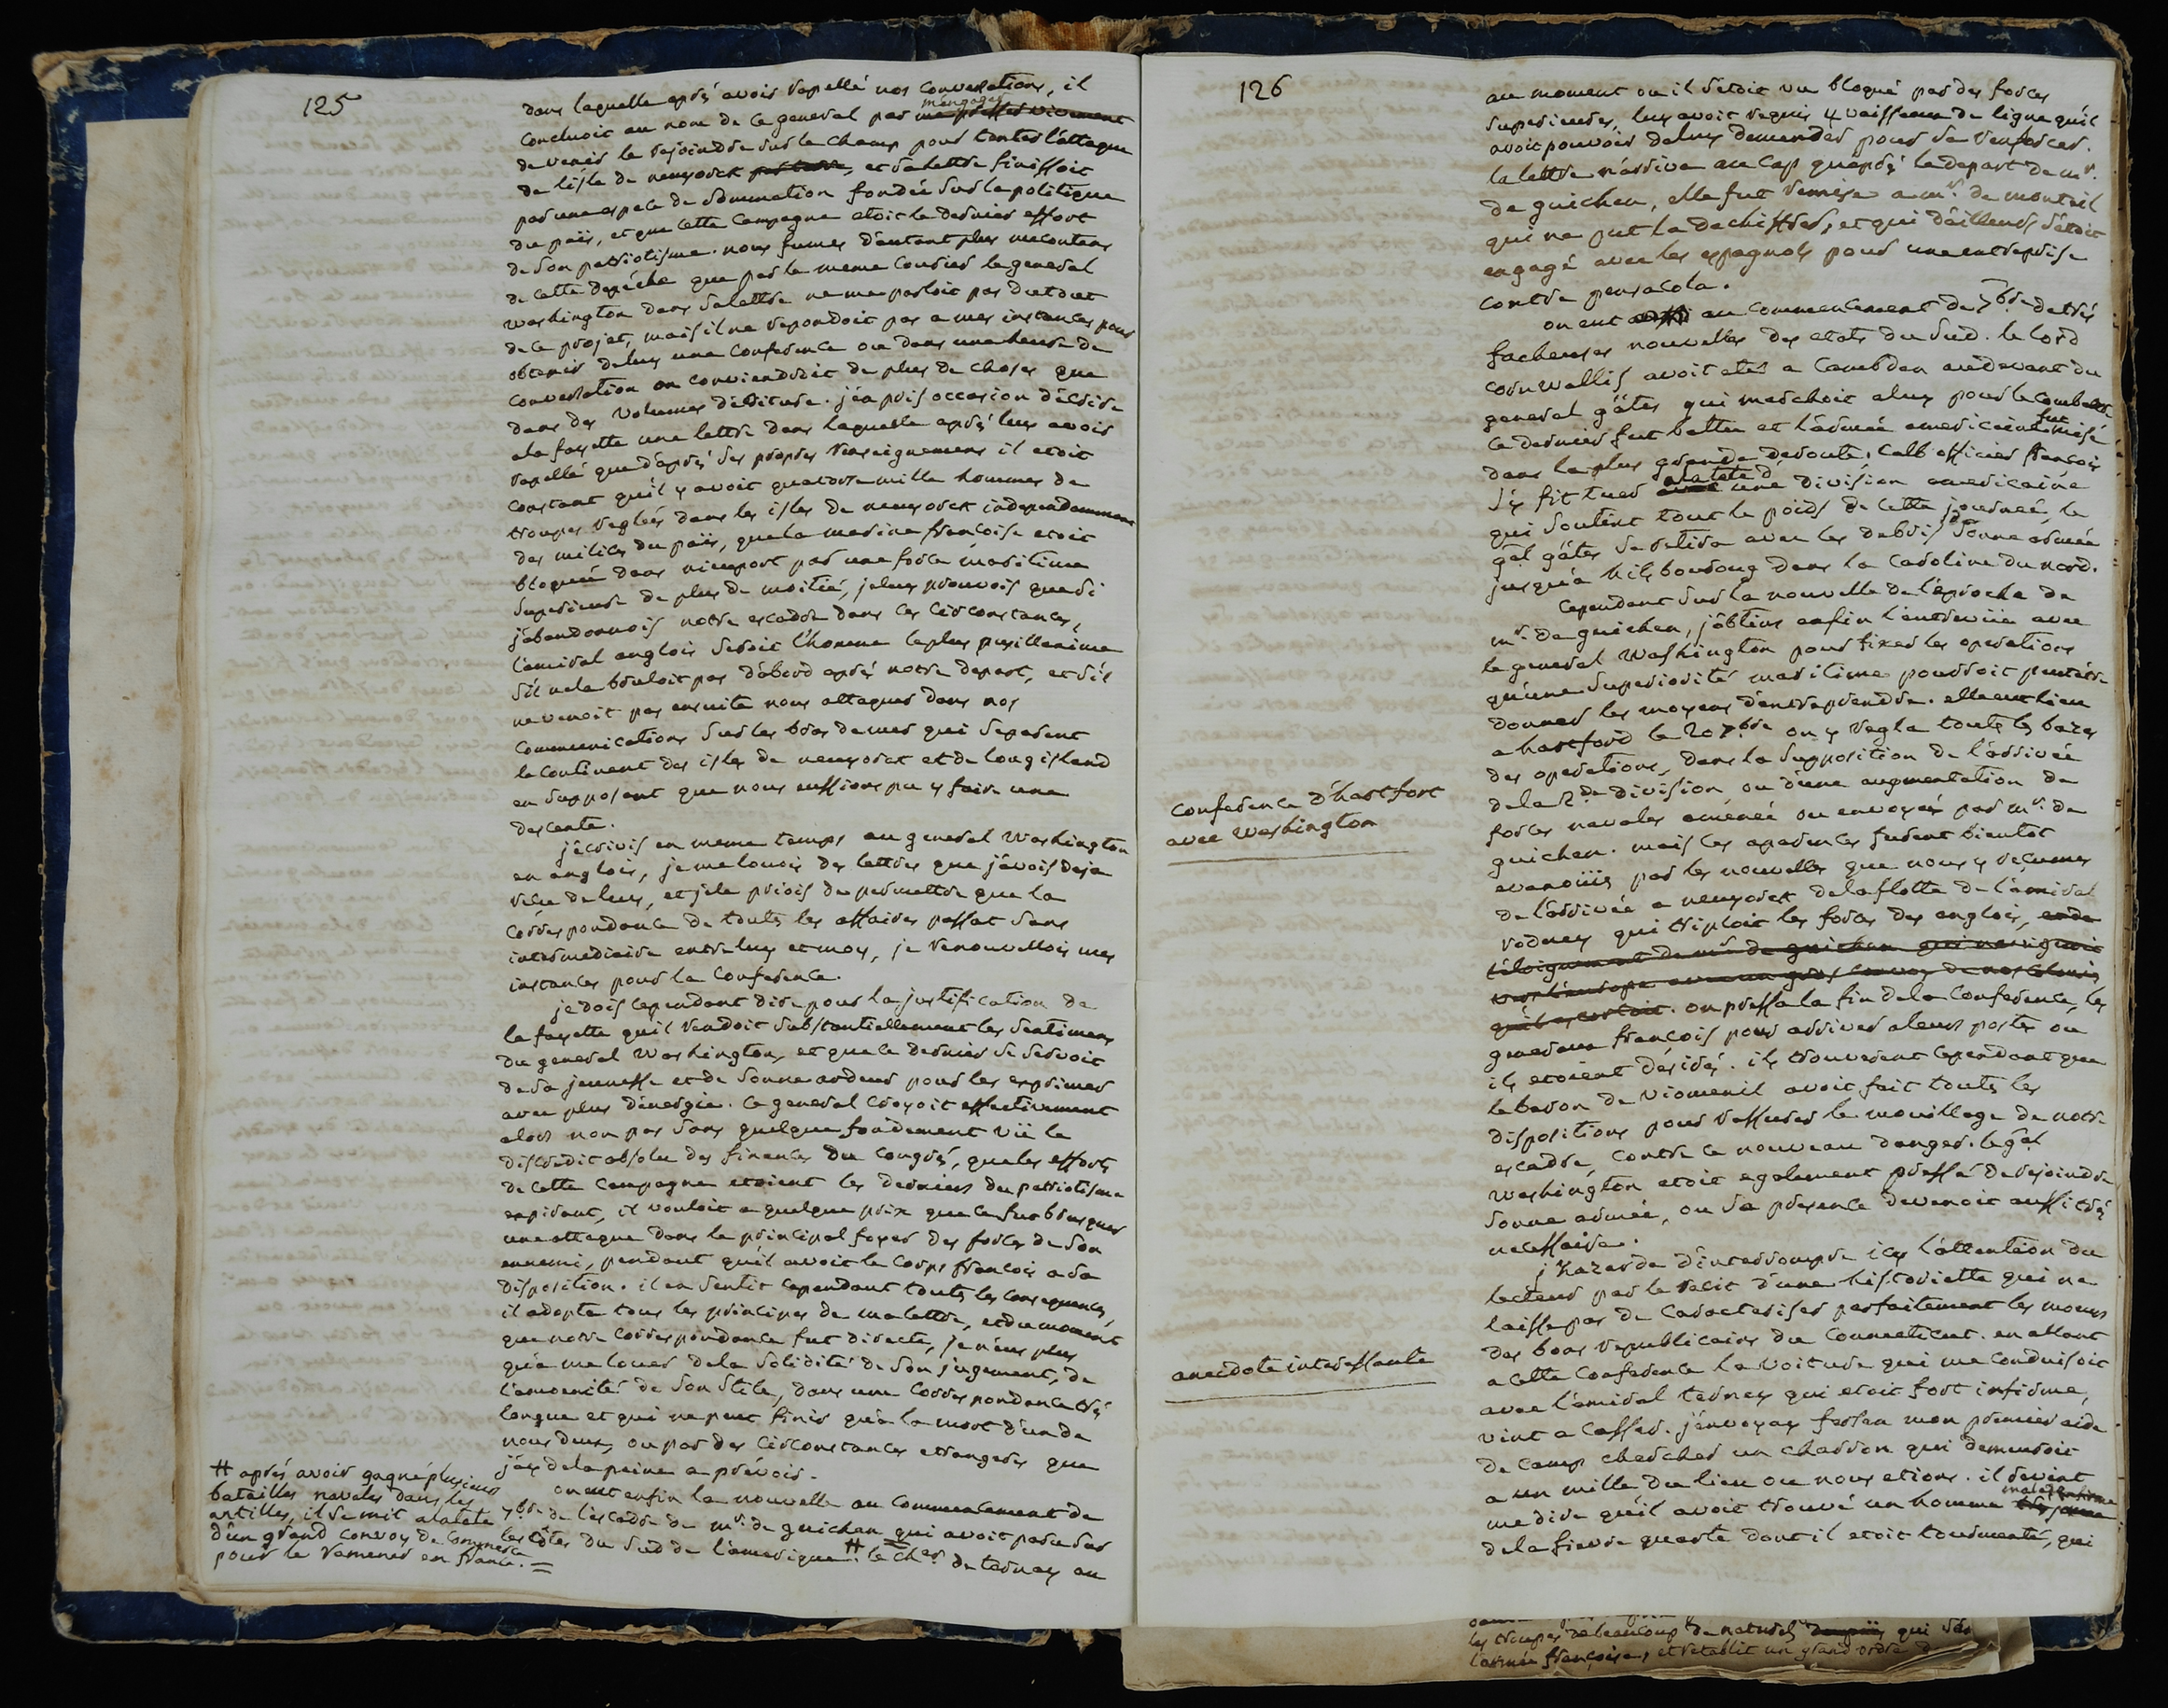 “Manuscript des memoires politiques et militaires du Marechal de Rochambeau” by comte de Rochambeau, 1725-1807.